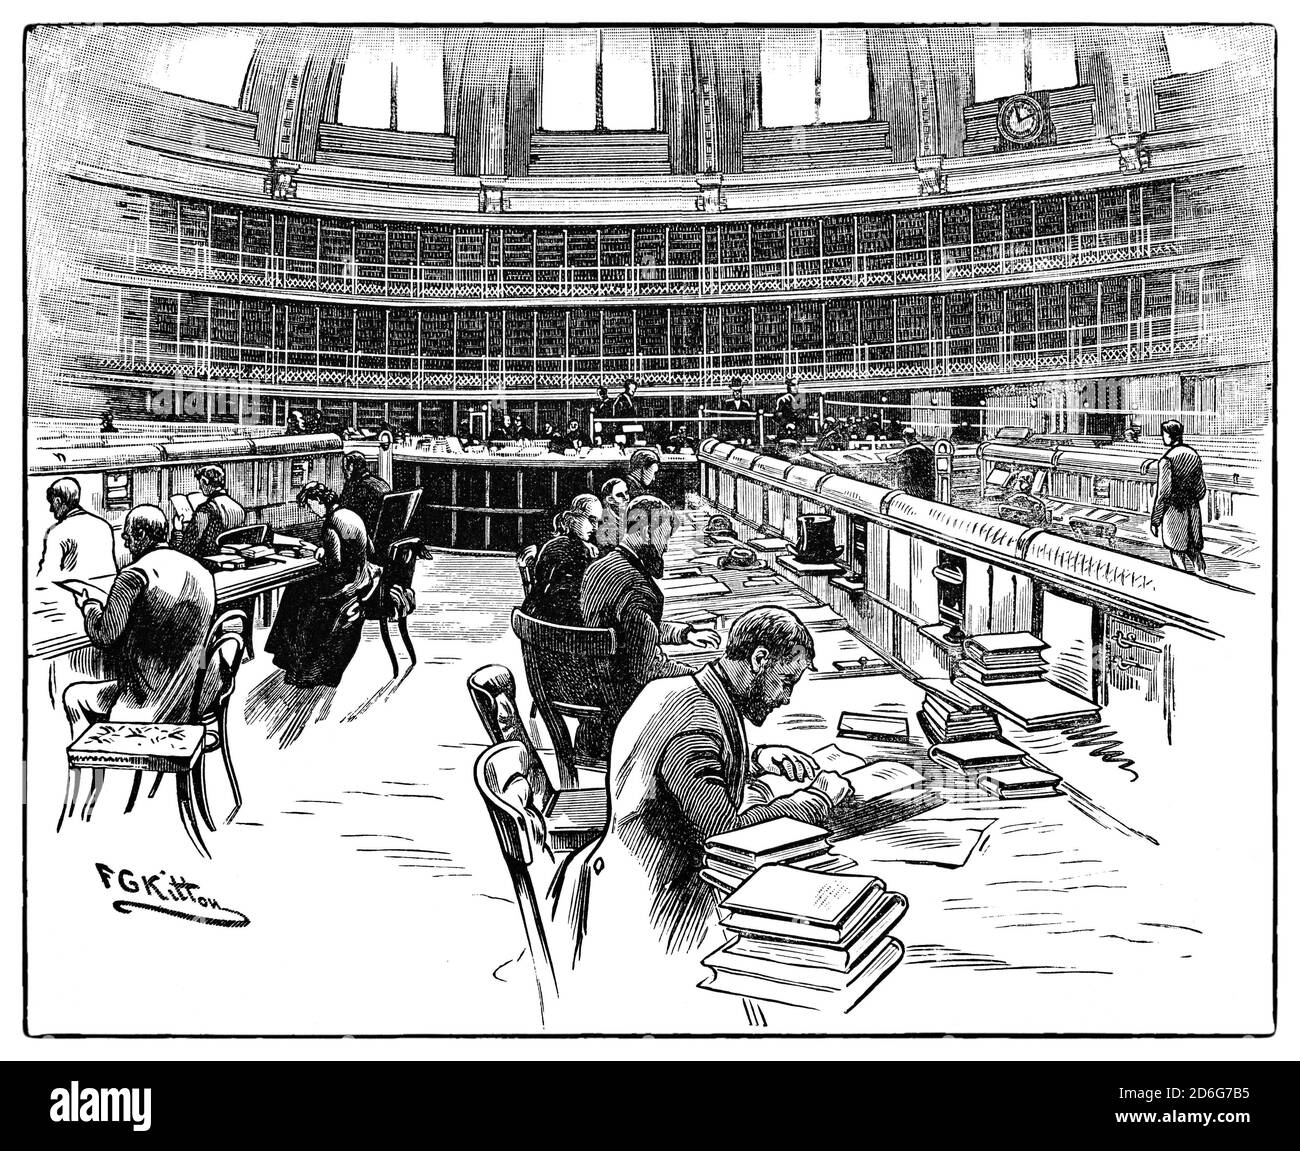 Eine Ansicht des Lesesaals aus dem 19. Jahrhundert wurde 1857 im Herzen des British Museum eröffnet, dem ersten öffentlichen Nationalmuseum der Welt, das in der Gegend von Bloomsbury in London, Großbritannien, gegründet wurde. Stockfoto